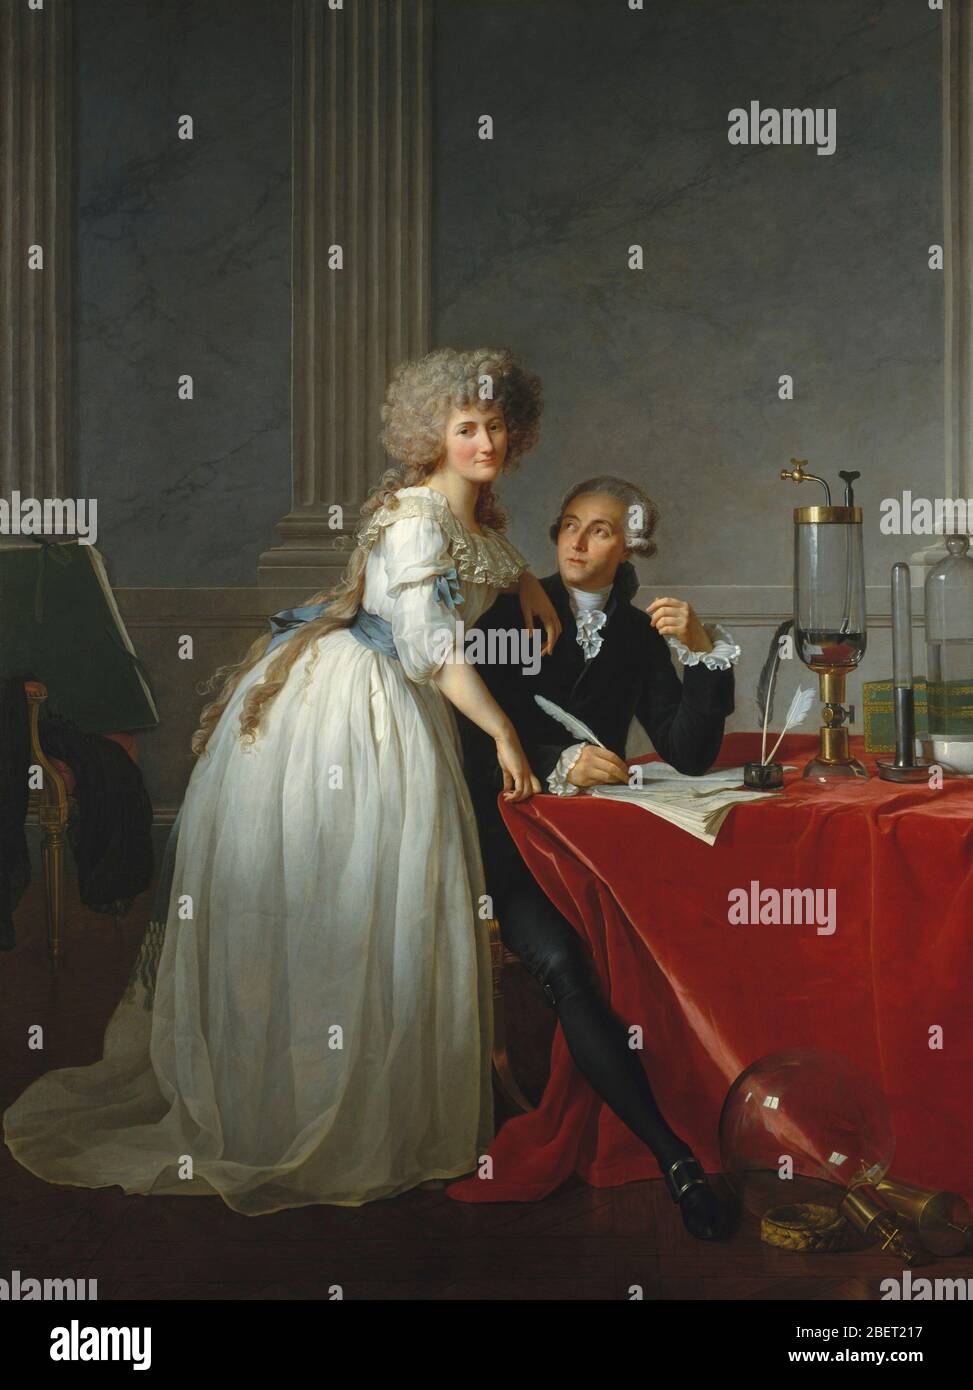 Peinture à l'huile européenne du XVIIIe siècle d'Antoine-Laurent de Lavoisier et de sa femme, tous deux ont noté des chimistes de l'époque. Banque D'Images